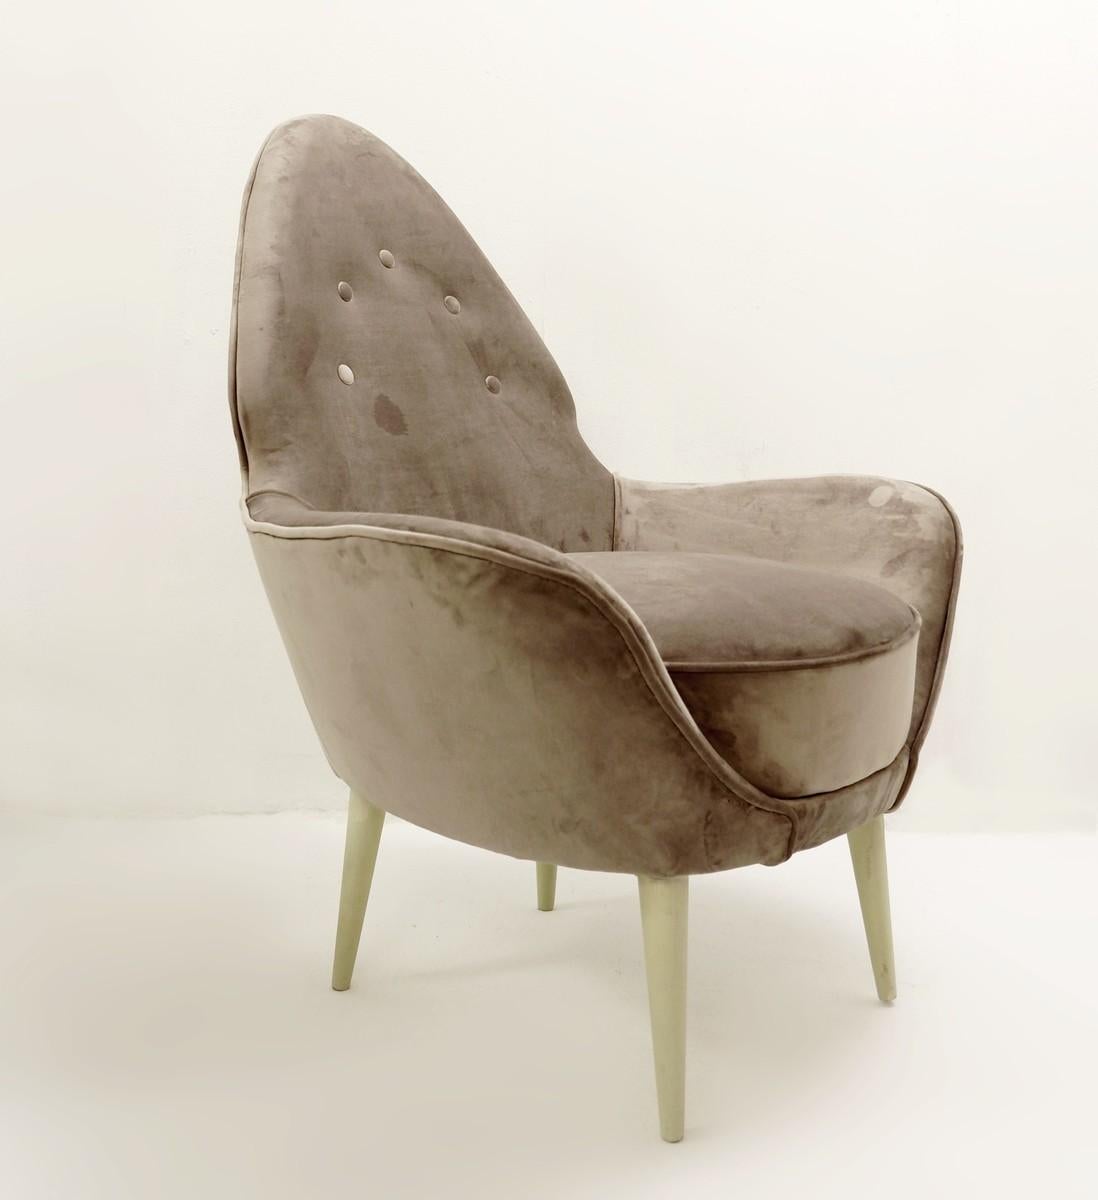 Pointed Back Italian armchairs - New grey velvet upholstery.
 